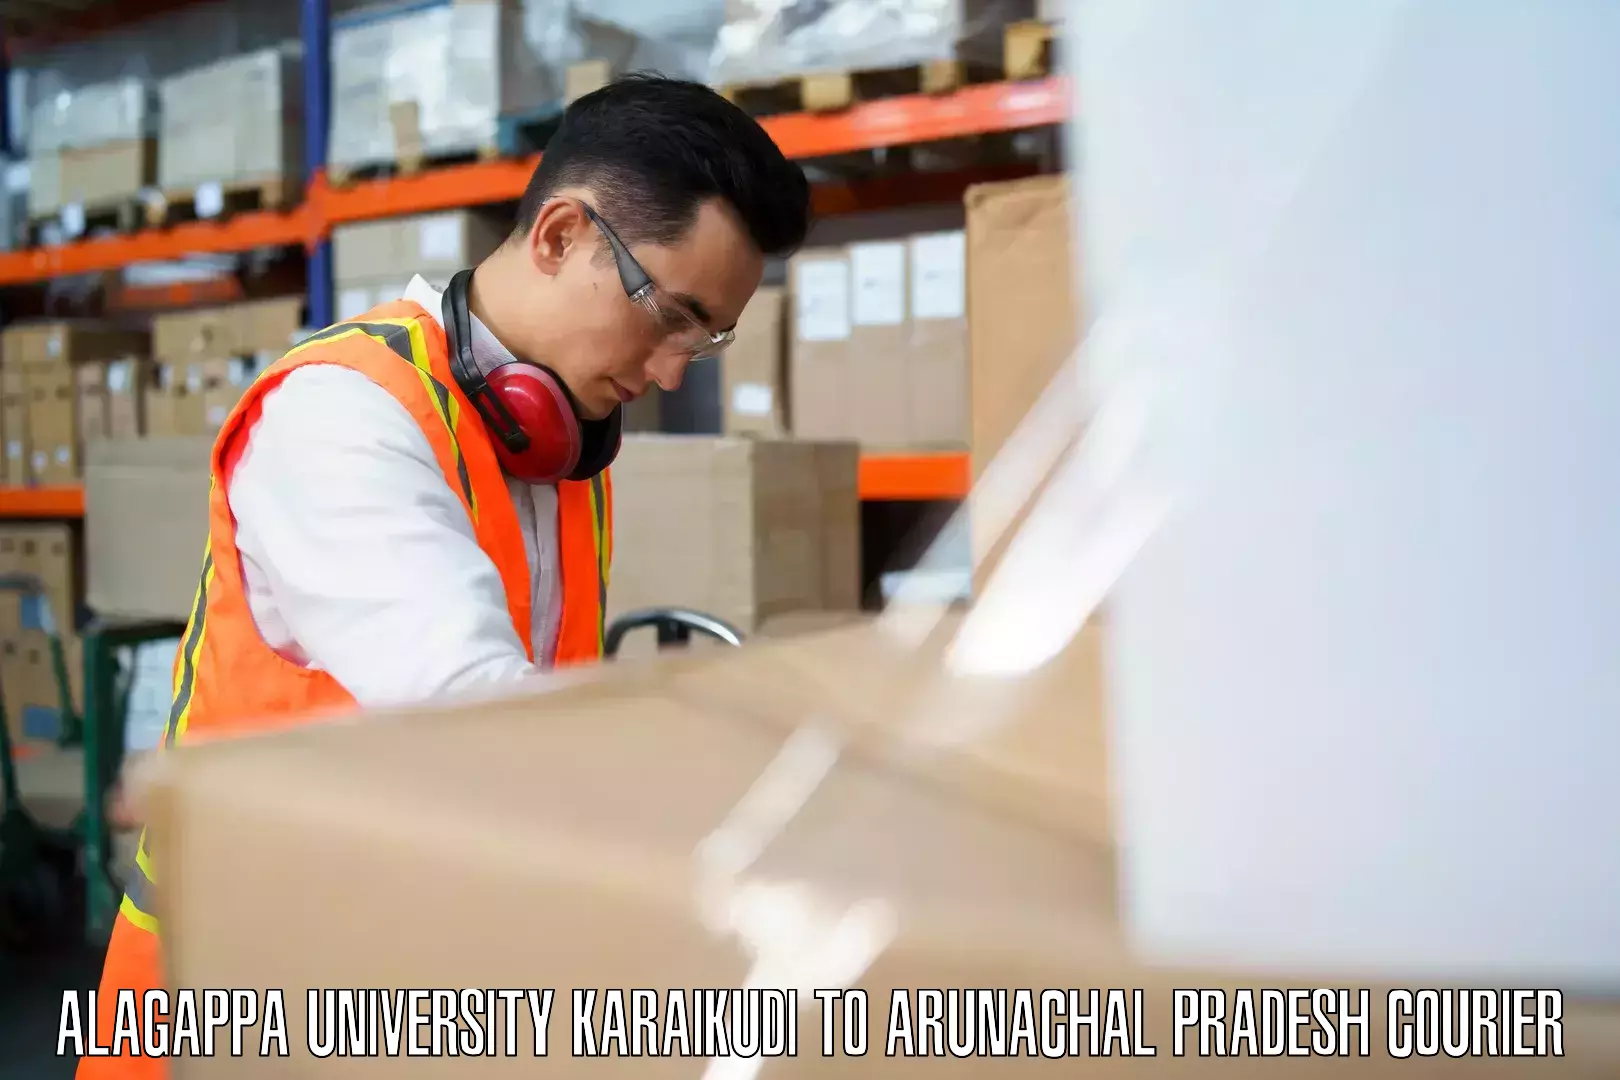 Luggage transport consultancy in Alagappa University Karaikudi to Roing